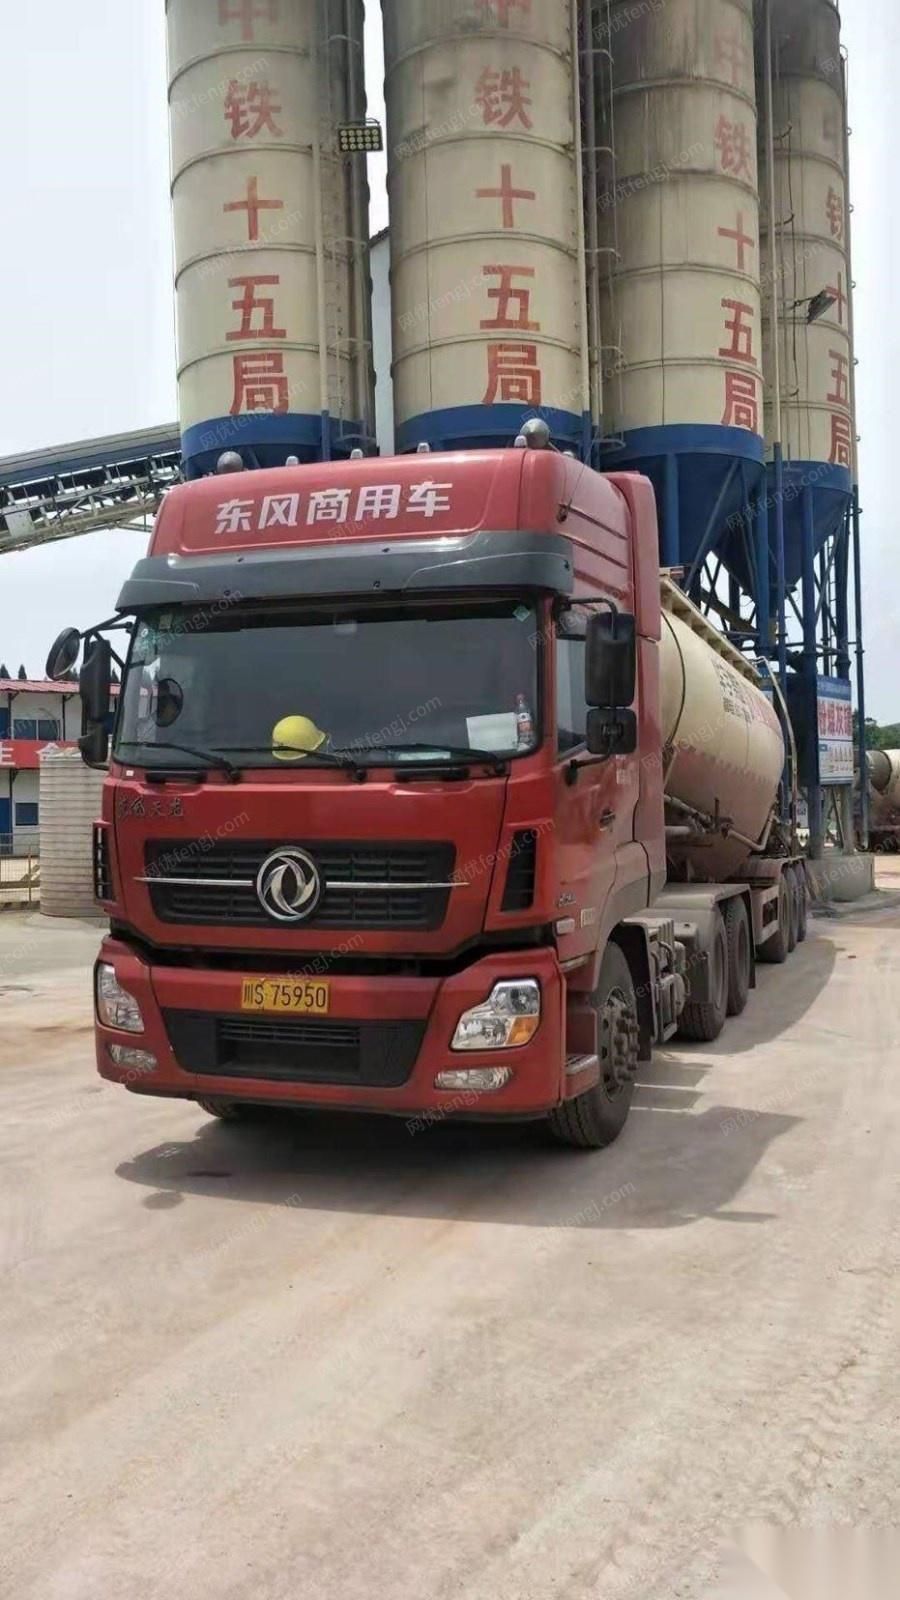 重庆巴南区出售100吨立式水泥罐子